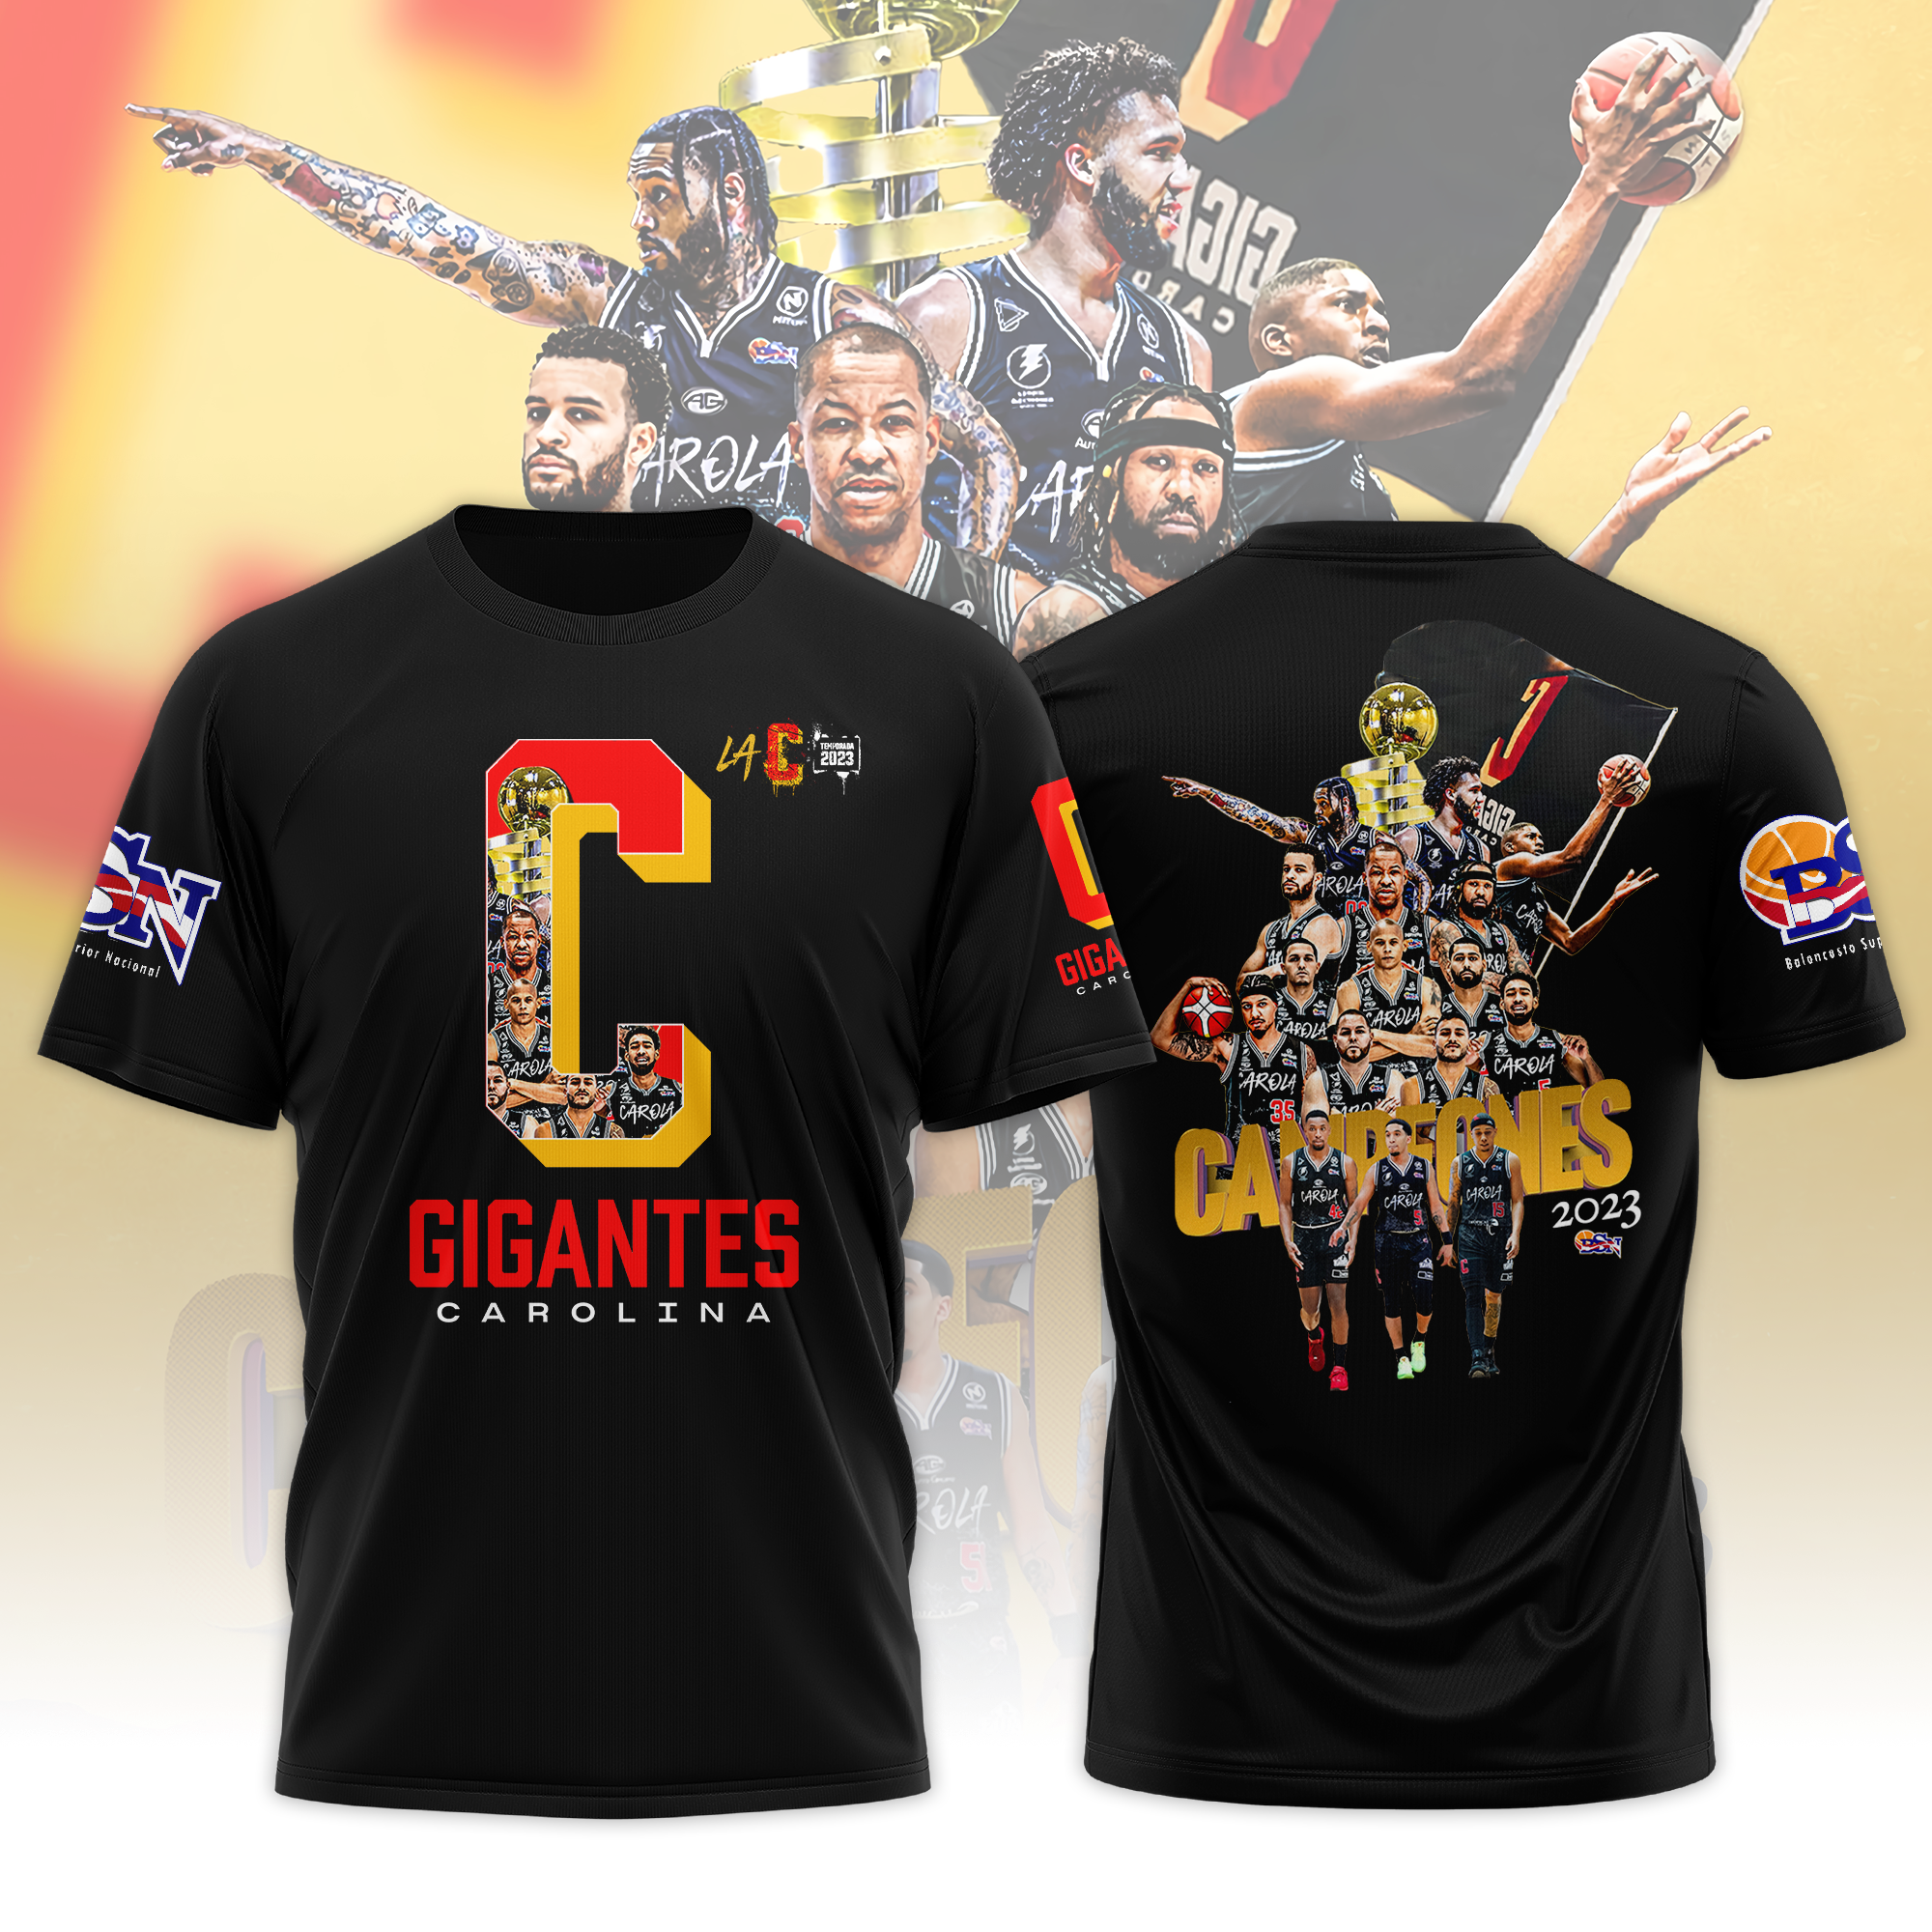 Gigantes De Carolina Bsn Campeones 2023 3d Shirt - Tagotee